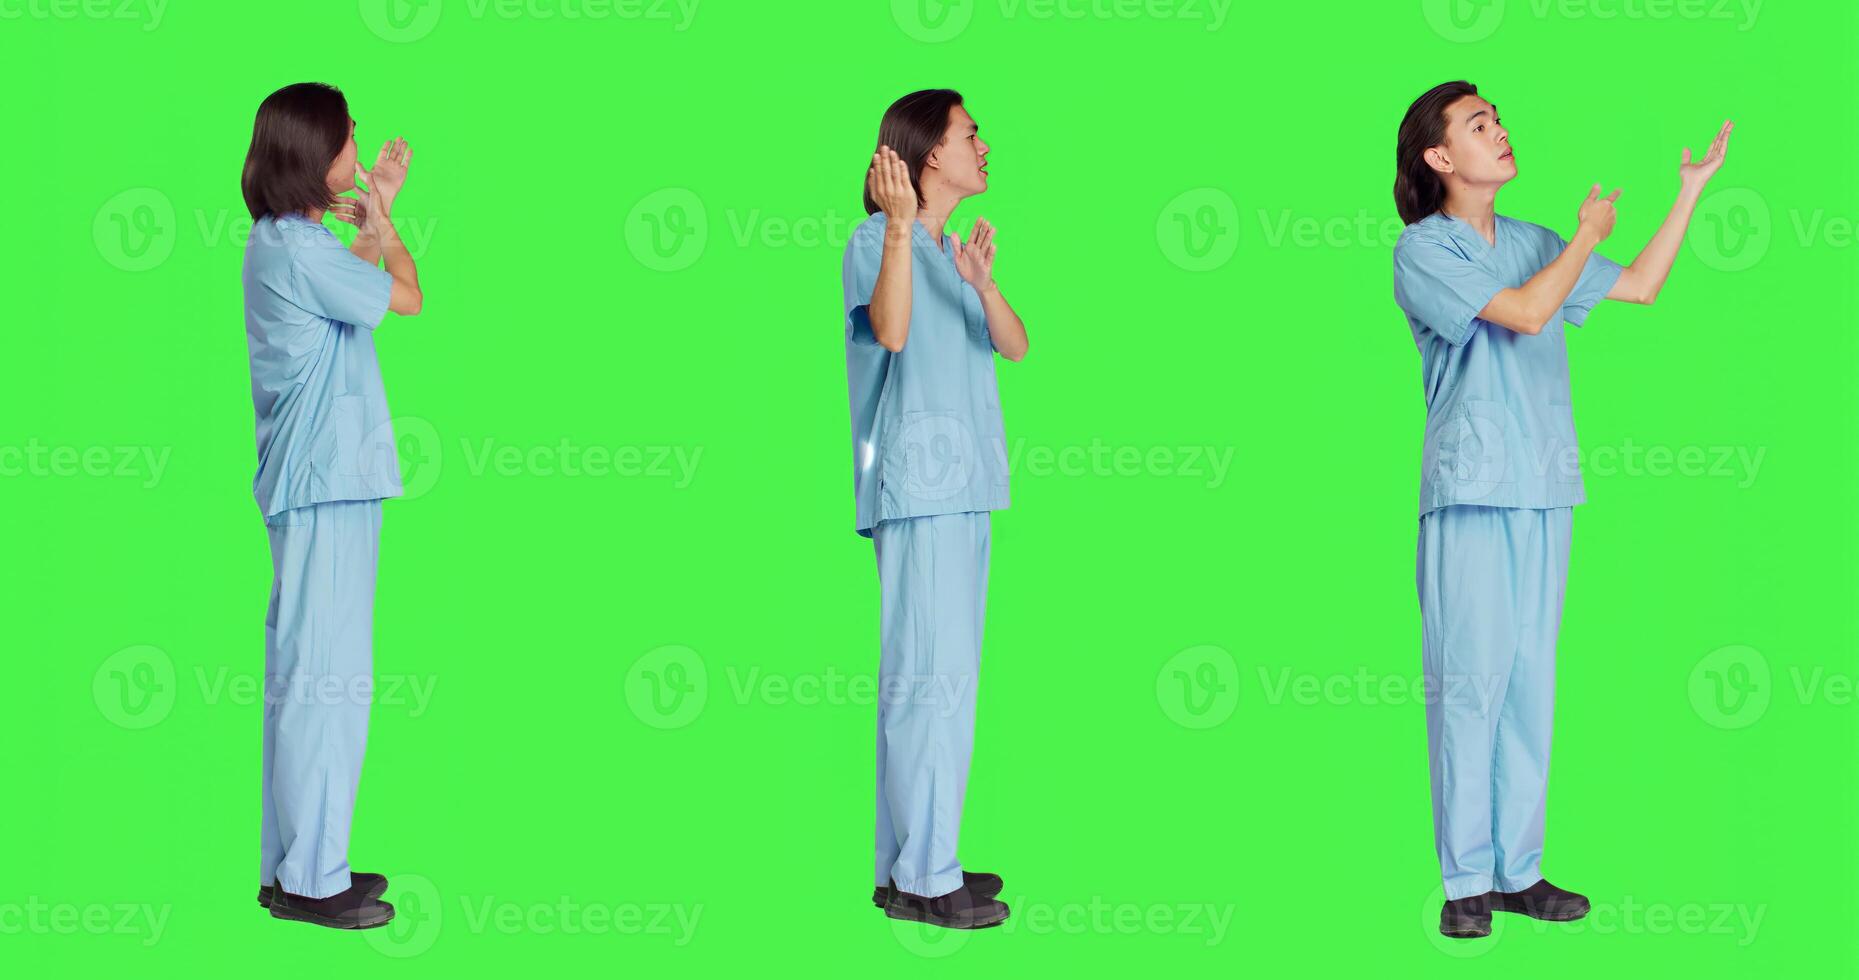 asiatique médical assistant crée commercial pour Nouveau médical un d campagne contre écran vert toile de fond. Jeune infirmière dans uniforme présente la gauche ou droite côtés, montrant Nouveau publicité slogan. photo